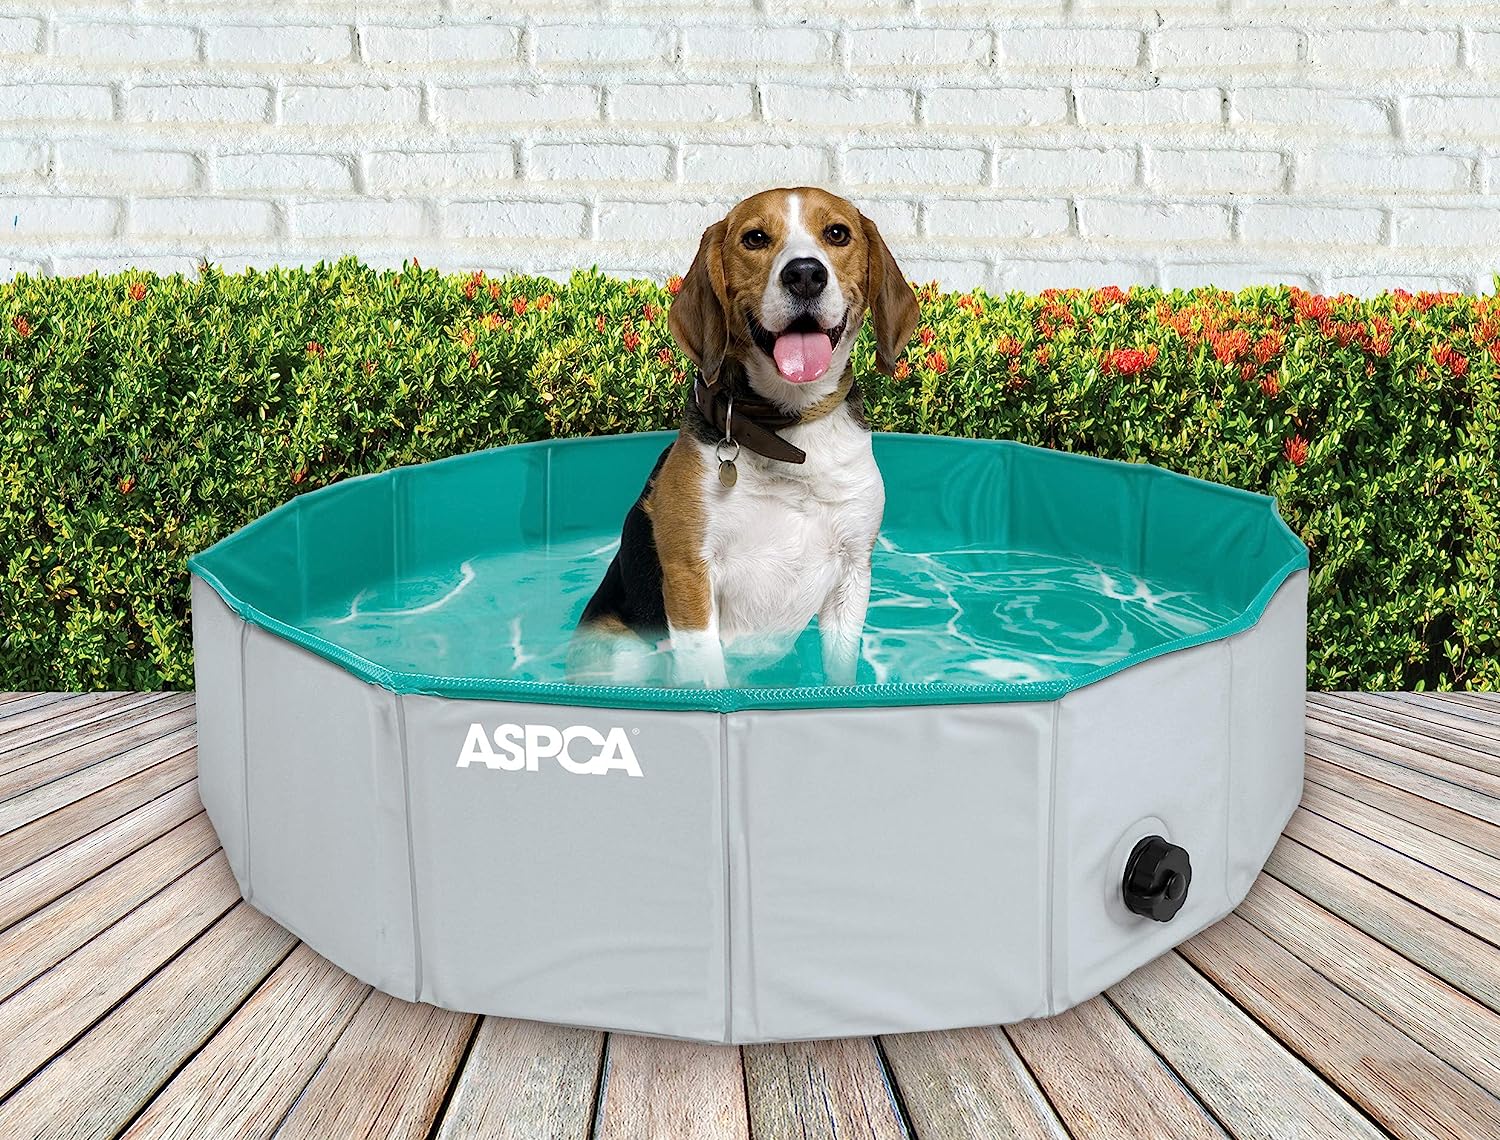 4. ASPCA Foldable Dog Bath Pool